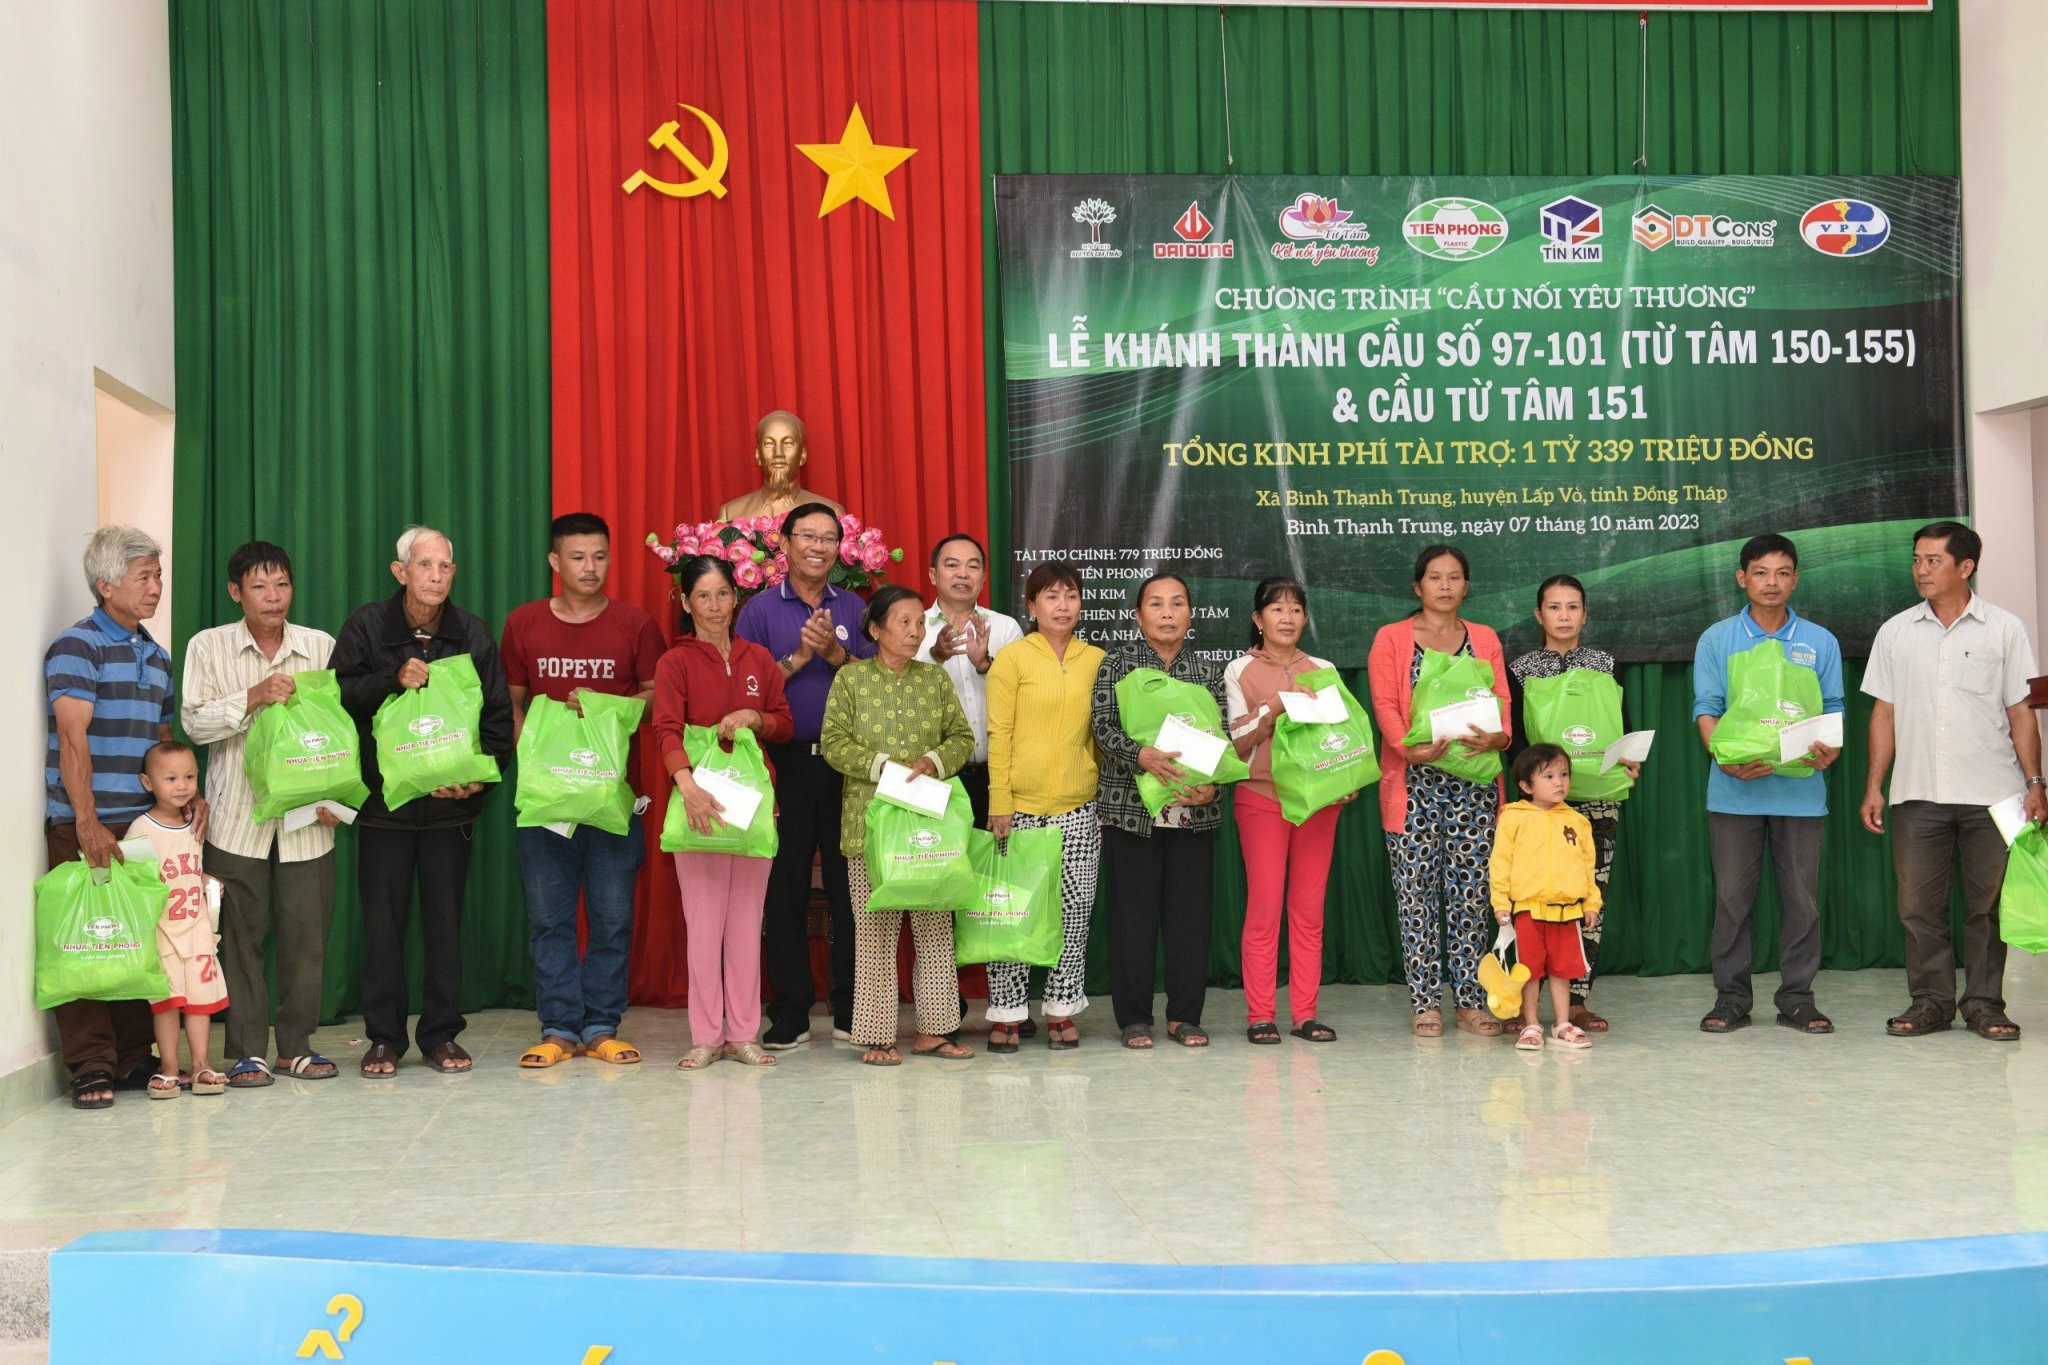 Chương trình Cầu nối yêu thương đã trao tặng 30 phần quà đến các gia đình khó khăn, chính sách của 03 ấp tại xã Bình Thạnh Trung, huyện Lấp Vò, tỉnh Đồng Tháp.